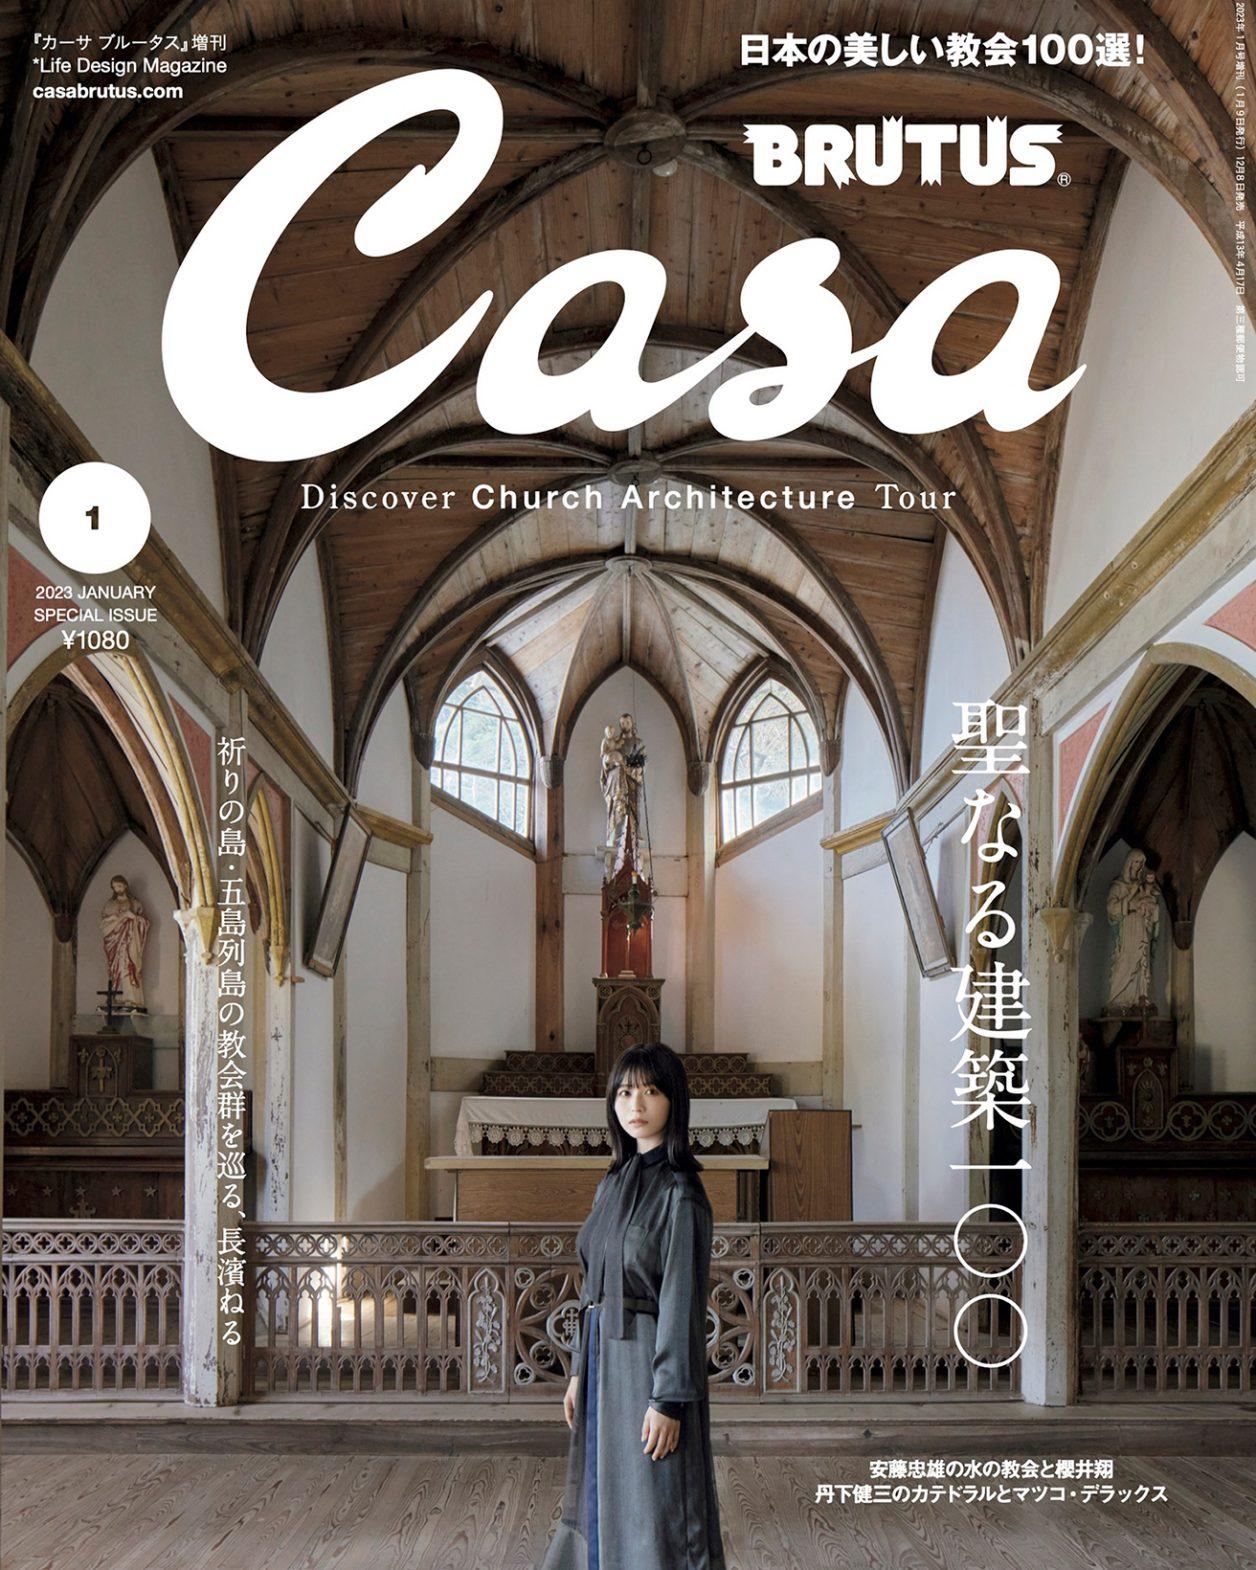 長濱ねるさんと五島列島の教会群を巡る旅へ。12月8日発売号『聖なる建築100』増刊。